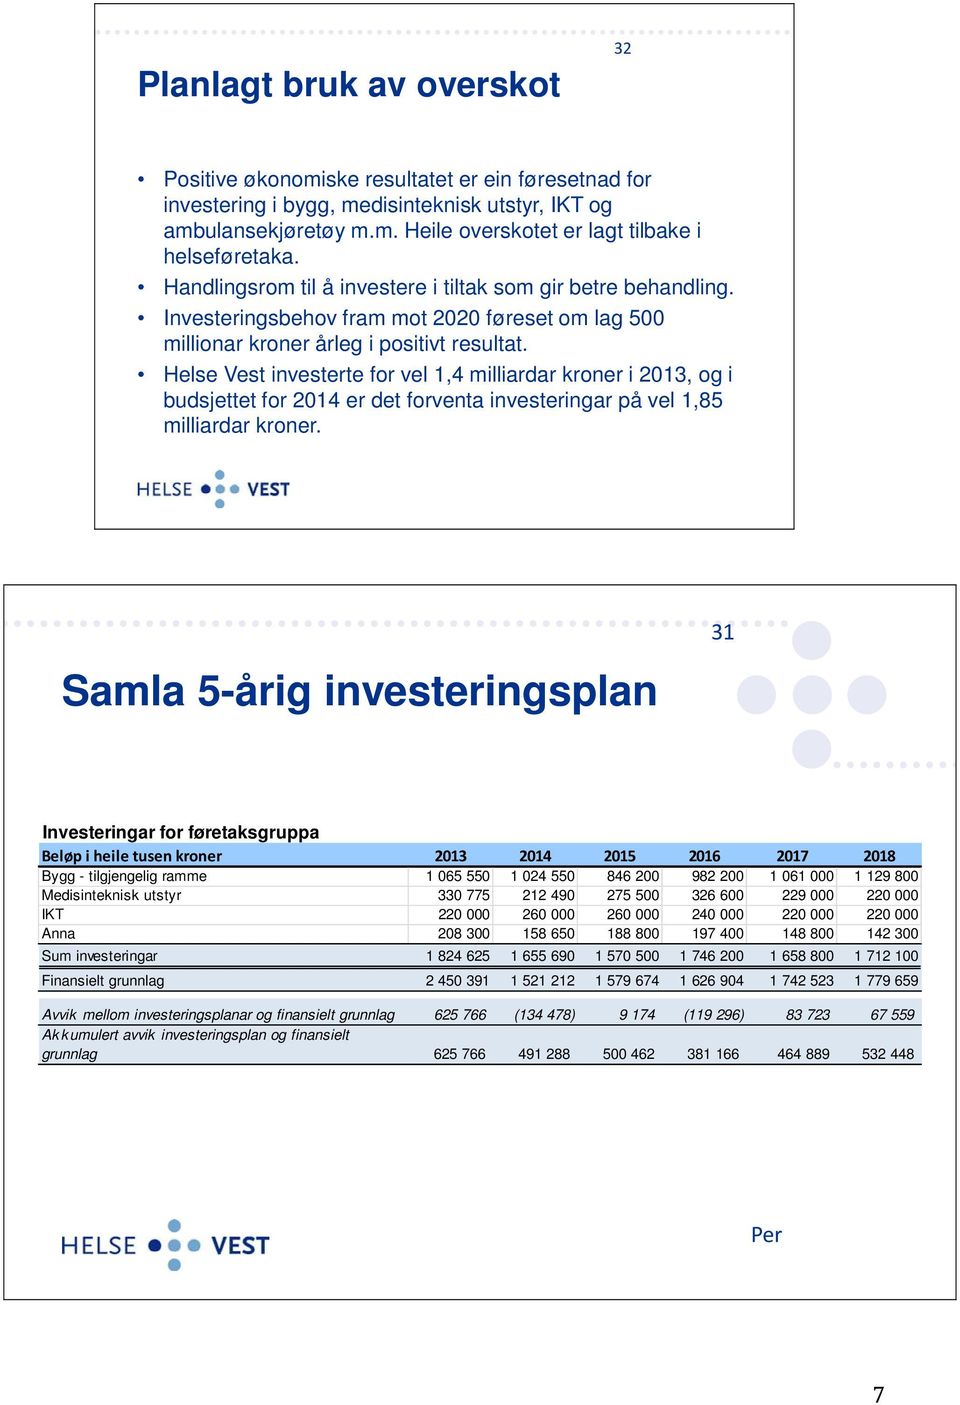 Helse Vest investerte for vel 1,4 milliardar kroner i 2013, og i budsjettet for 2014 er det forventa investeringar på vel 1,85 milliardar kroner.